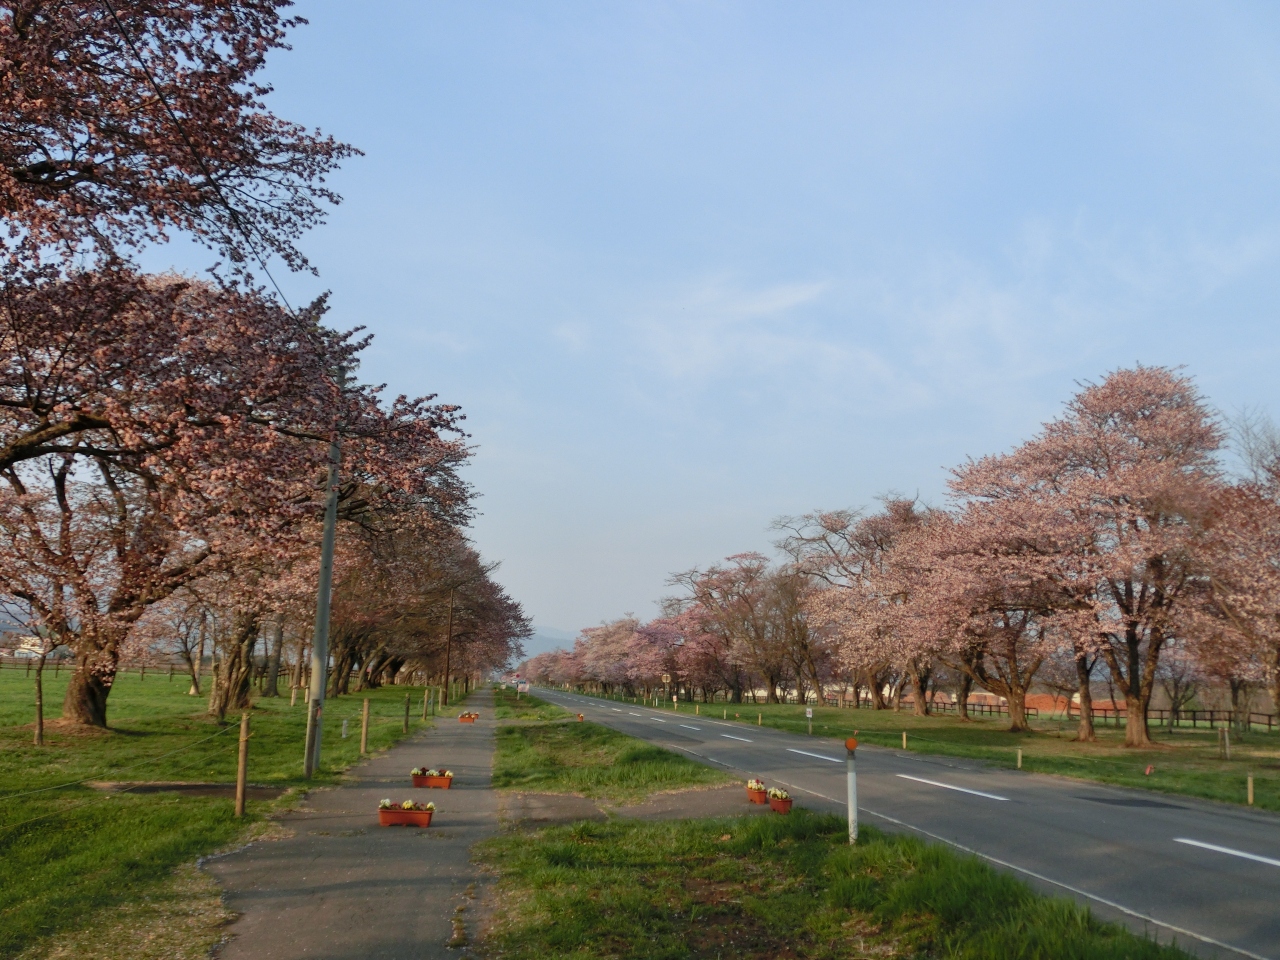 北海道の観光の春の人気スポット25選　10位:二十間道路桜並木